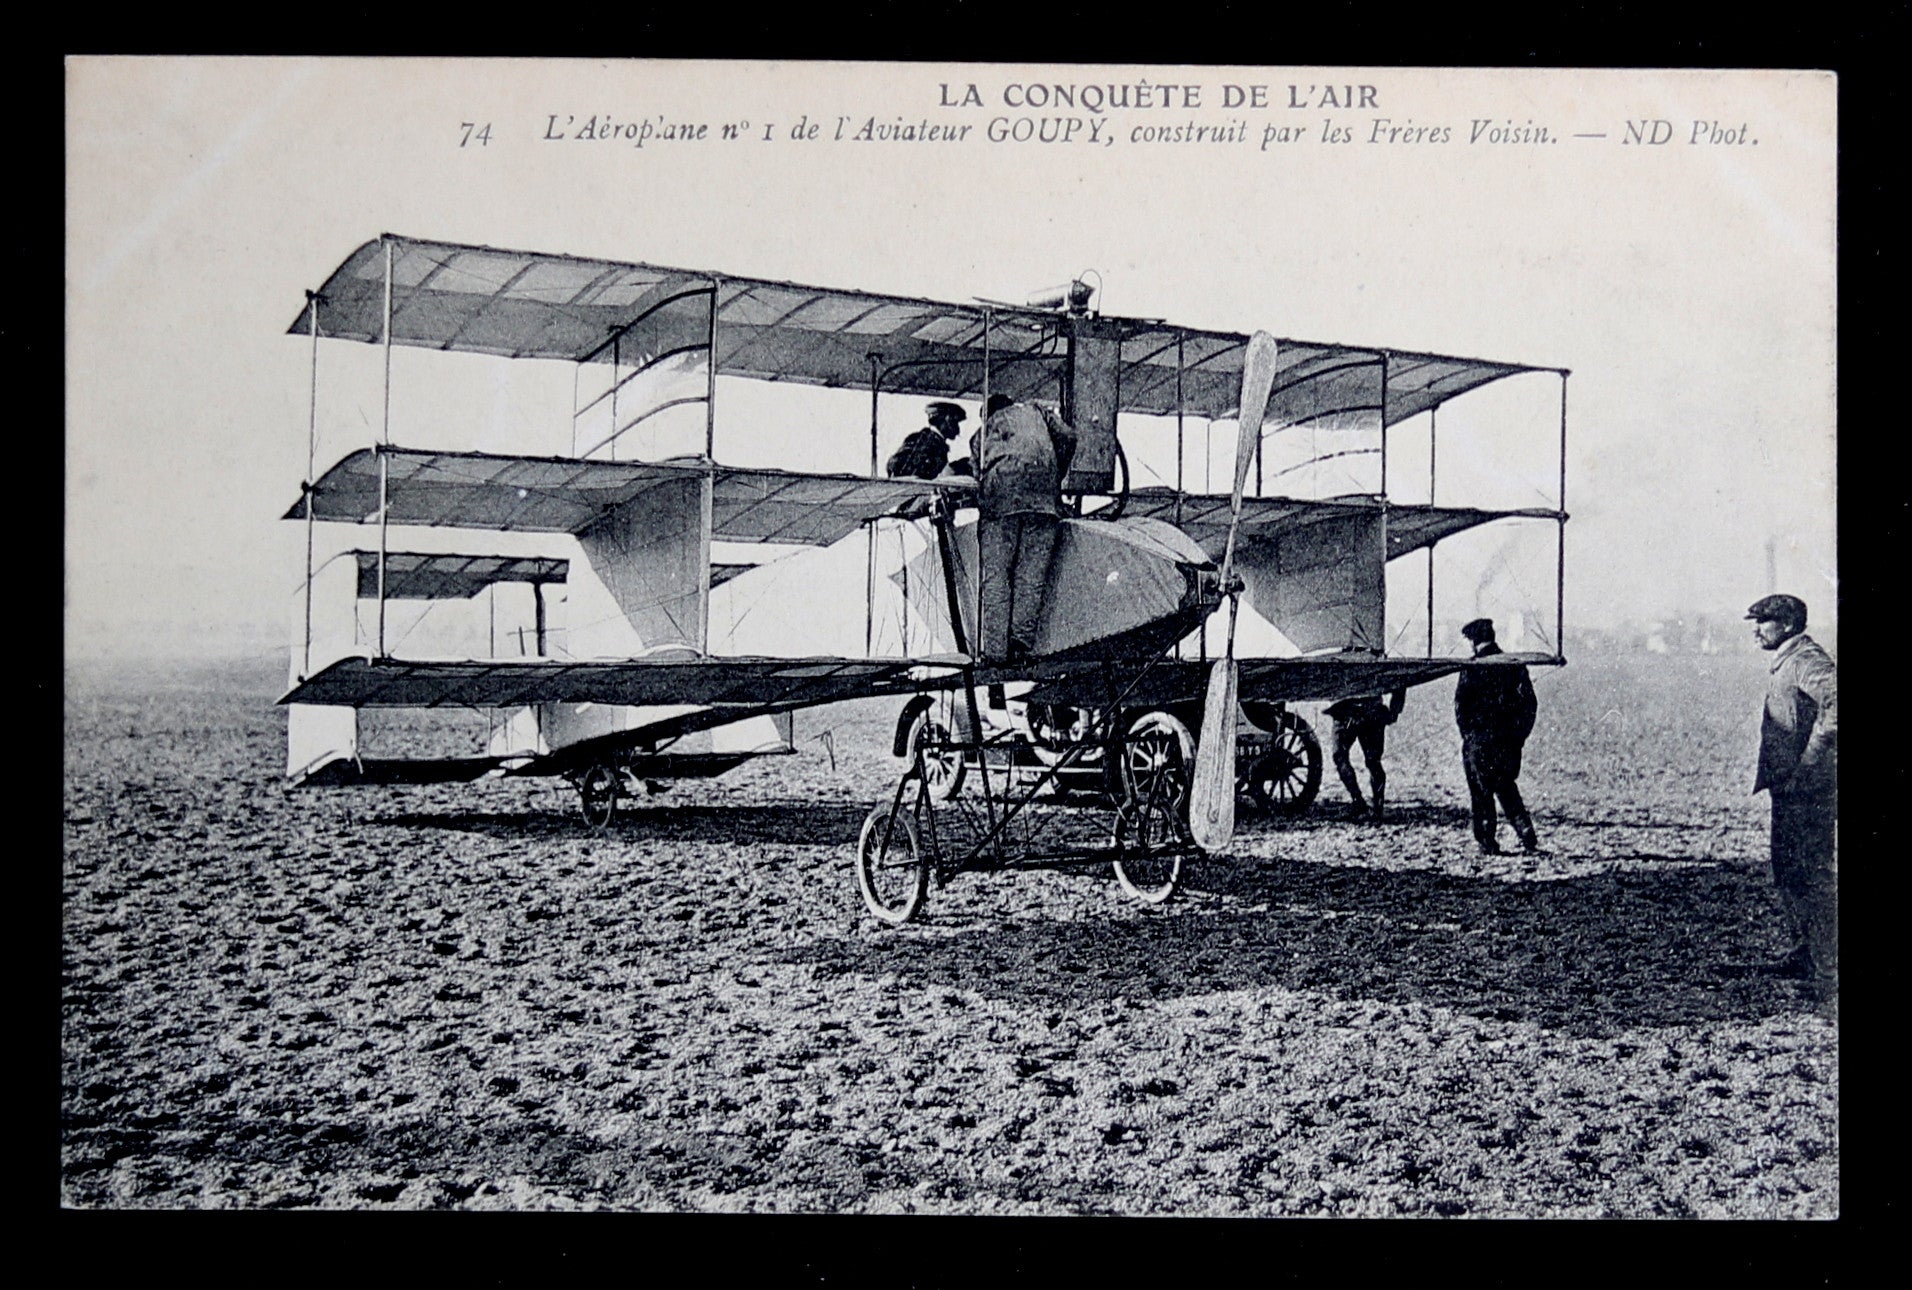 CPA avec photo de Goupy dans un aéroplane Voisin